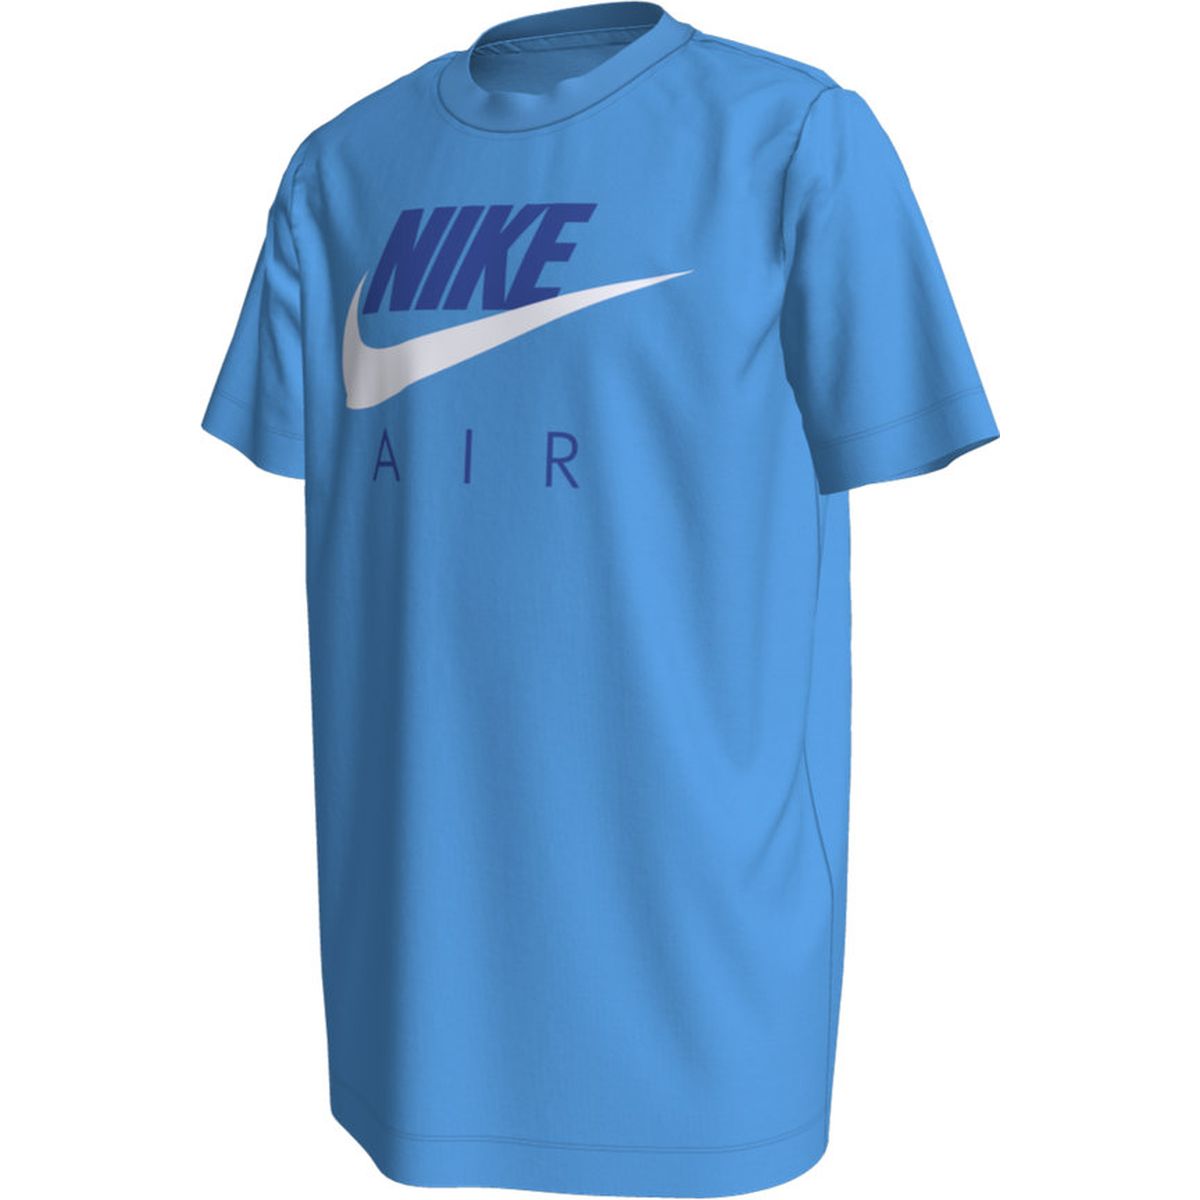 Nike Air Jungen T-Shirt